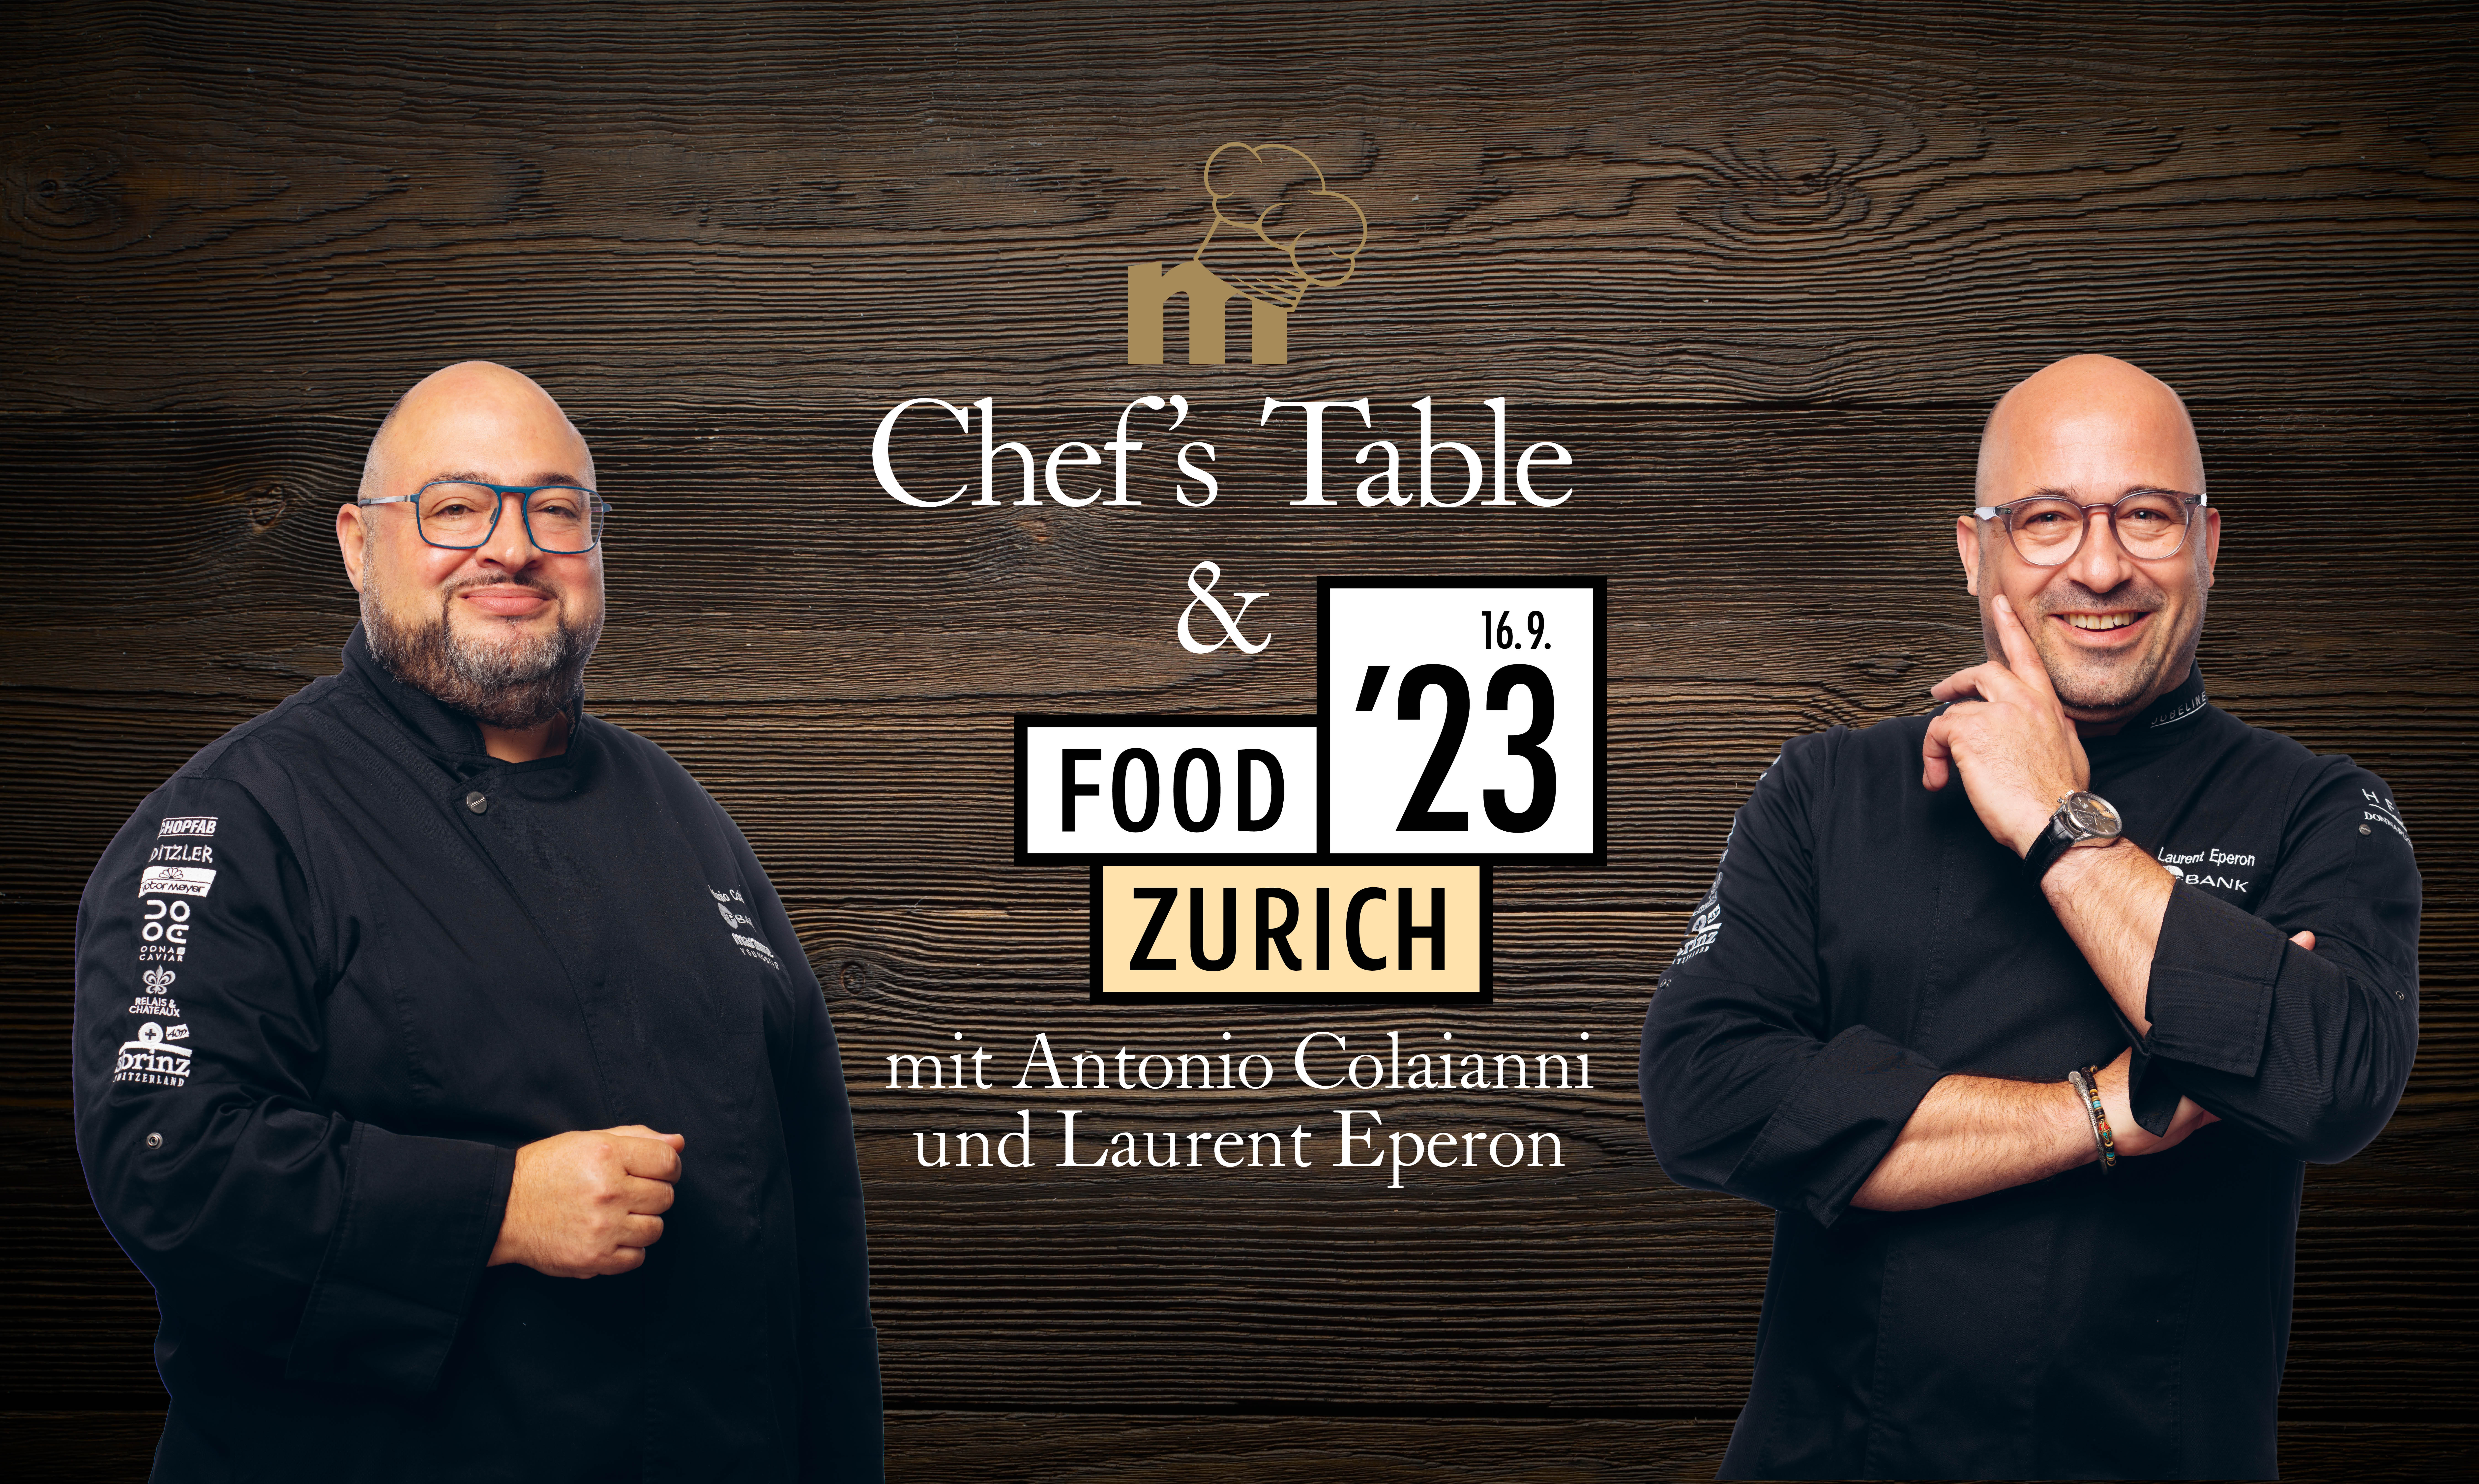 Das  Pop-up vom Pop-up: Der marmite Chef’s Table an der Food Zürich